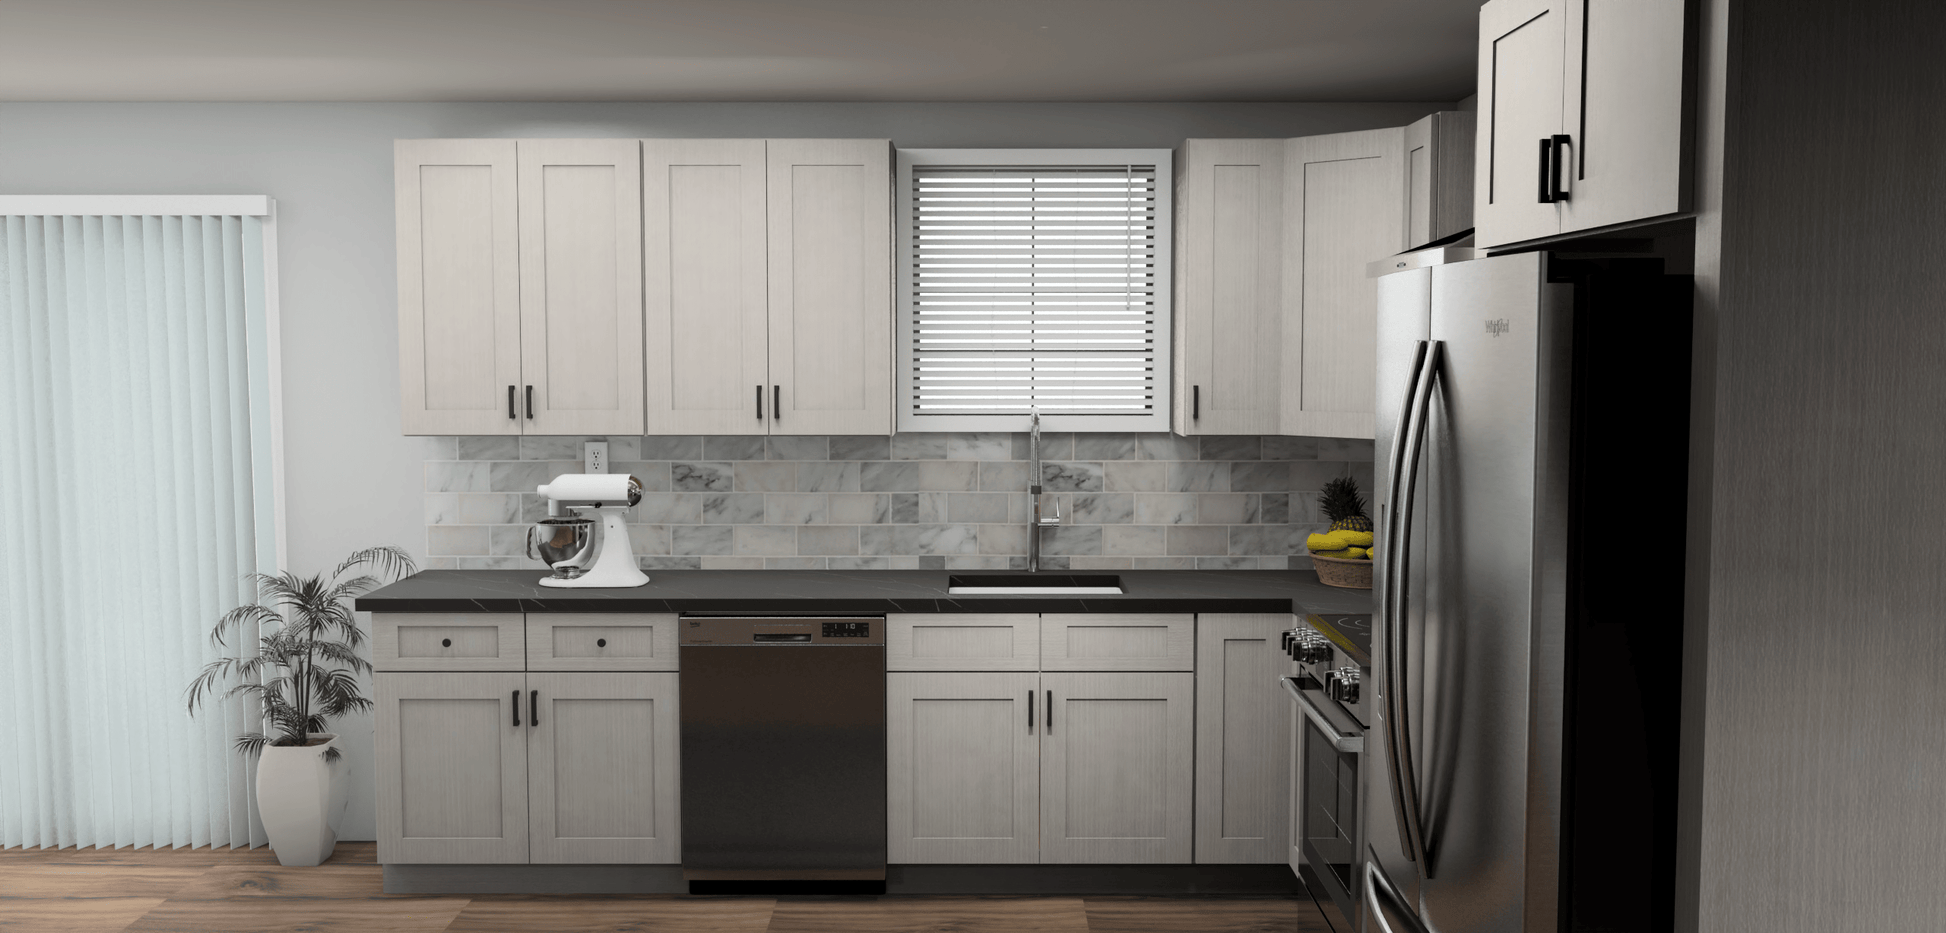 Fabuwood Allure Galaxy Horizon 11 x 11 L Shaped Kitchen Side Layout Photo